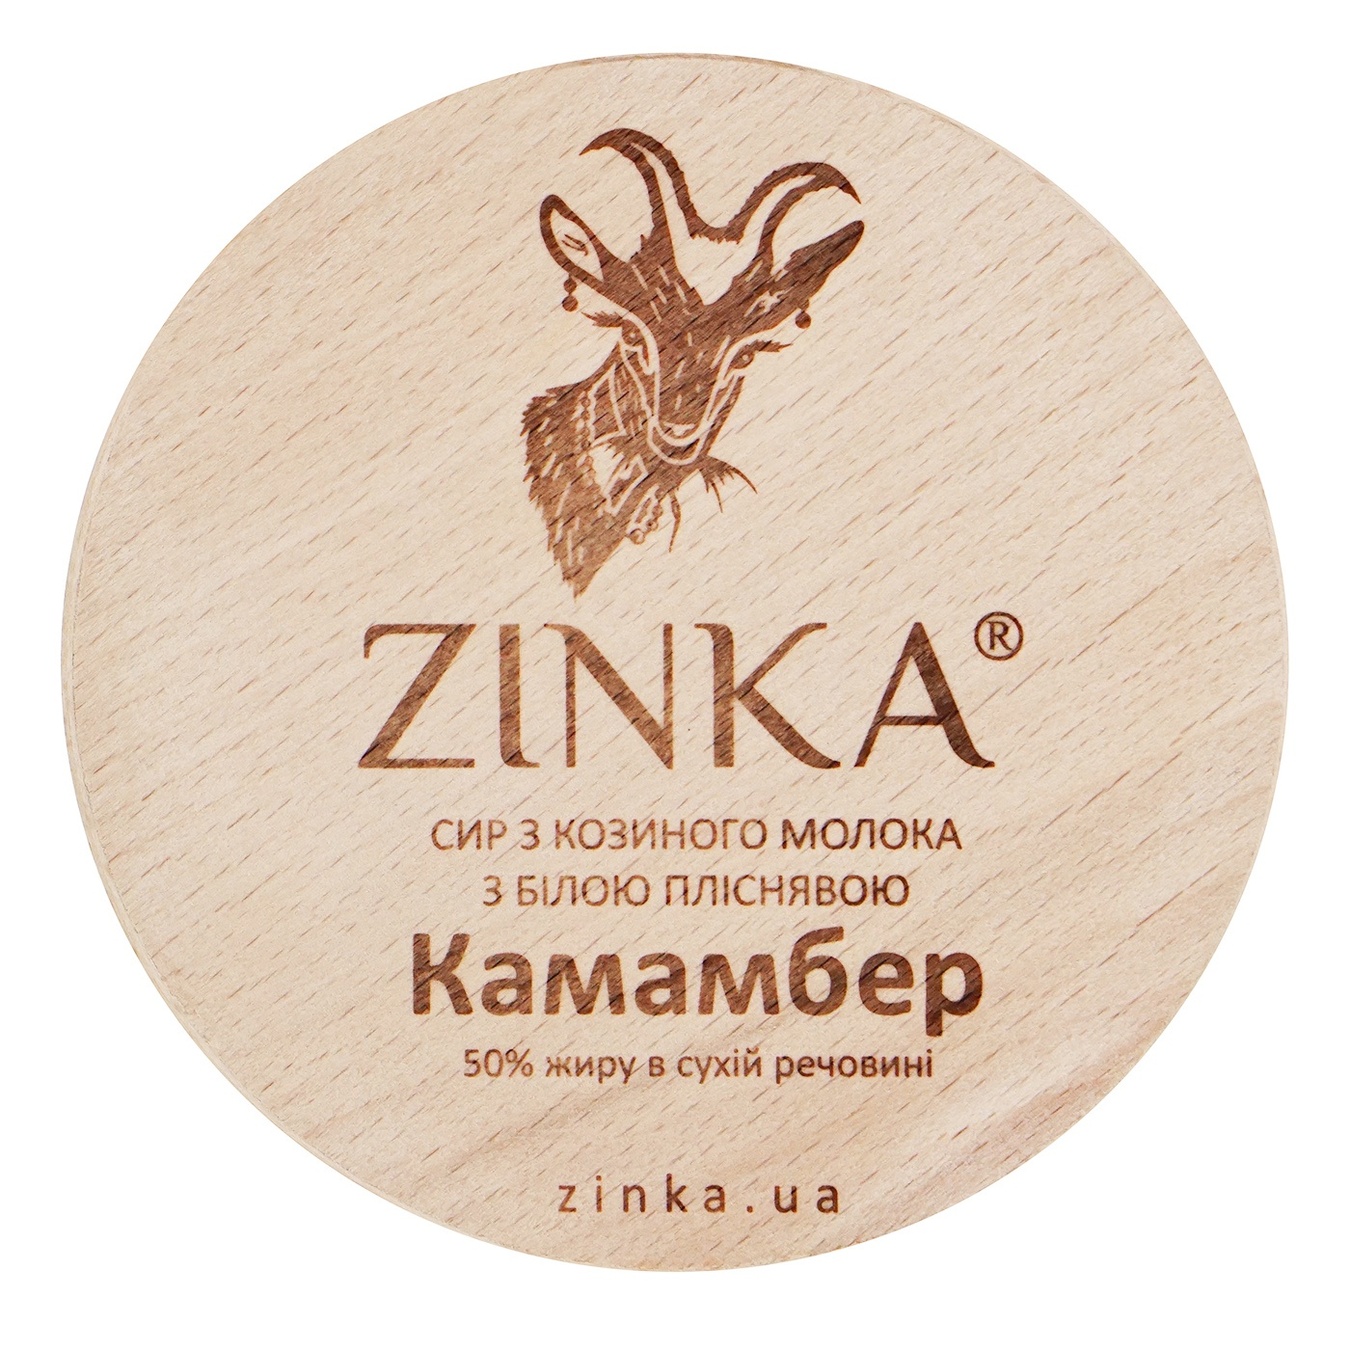 Сир Zinka з козиного молока камамбер в золі 50%